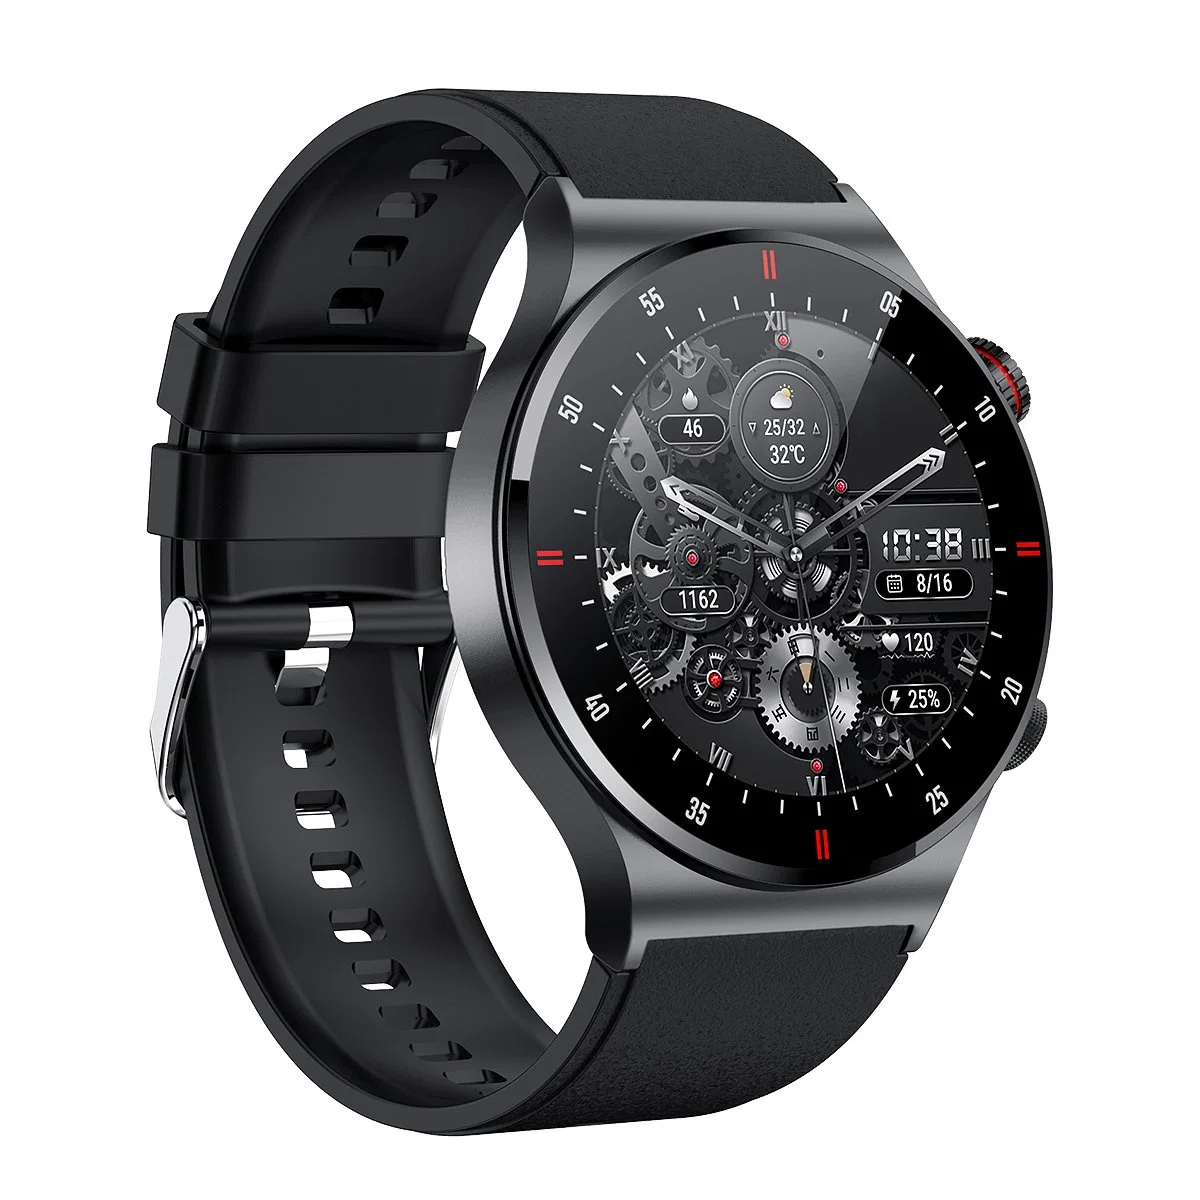 Беспроводной беспроводной беспроводной беспроводной телефон Qw33 1.28" Smart Watch Music Control Pedometer Bluetooth Call Мультиспортивные часы с функцией мониторинга артериального давления при пульсе — черный